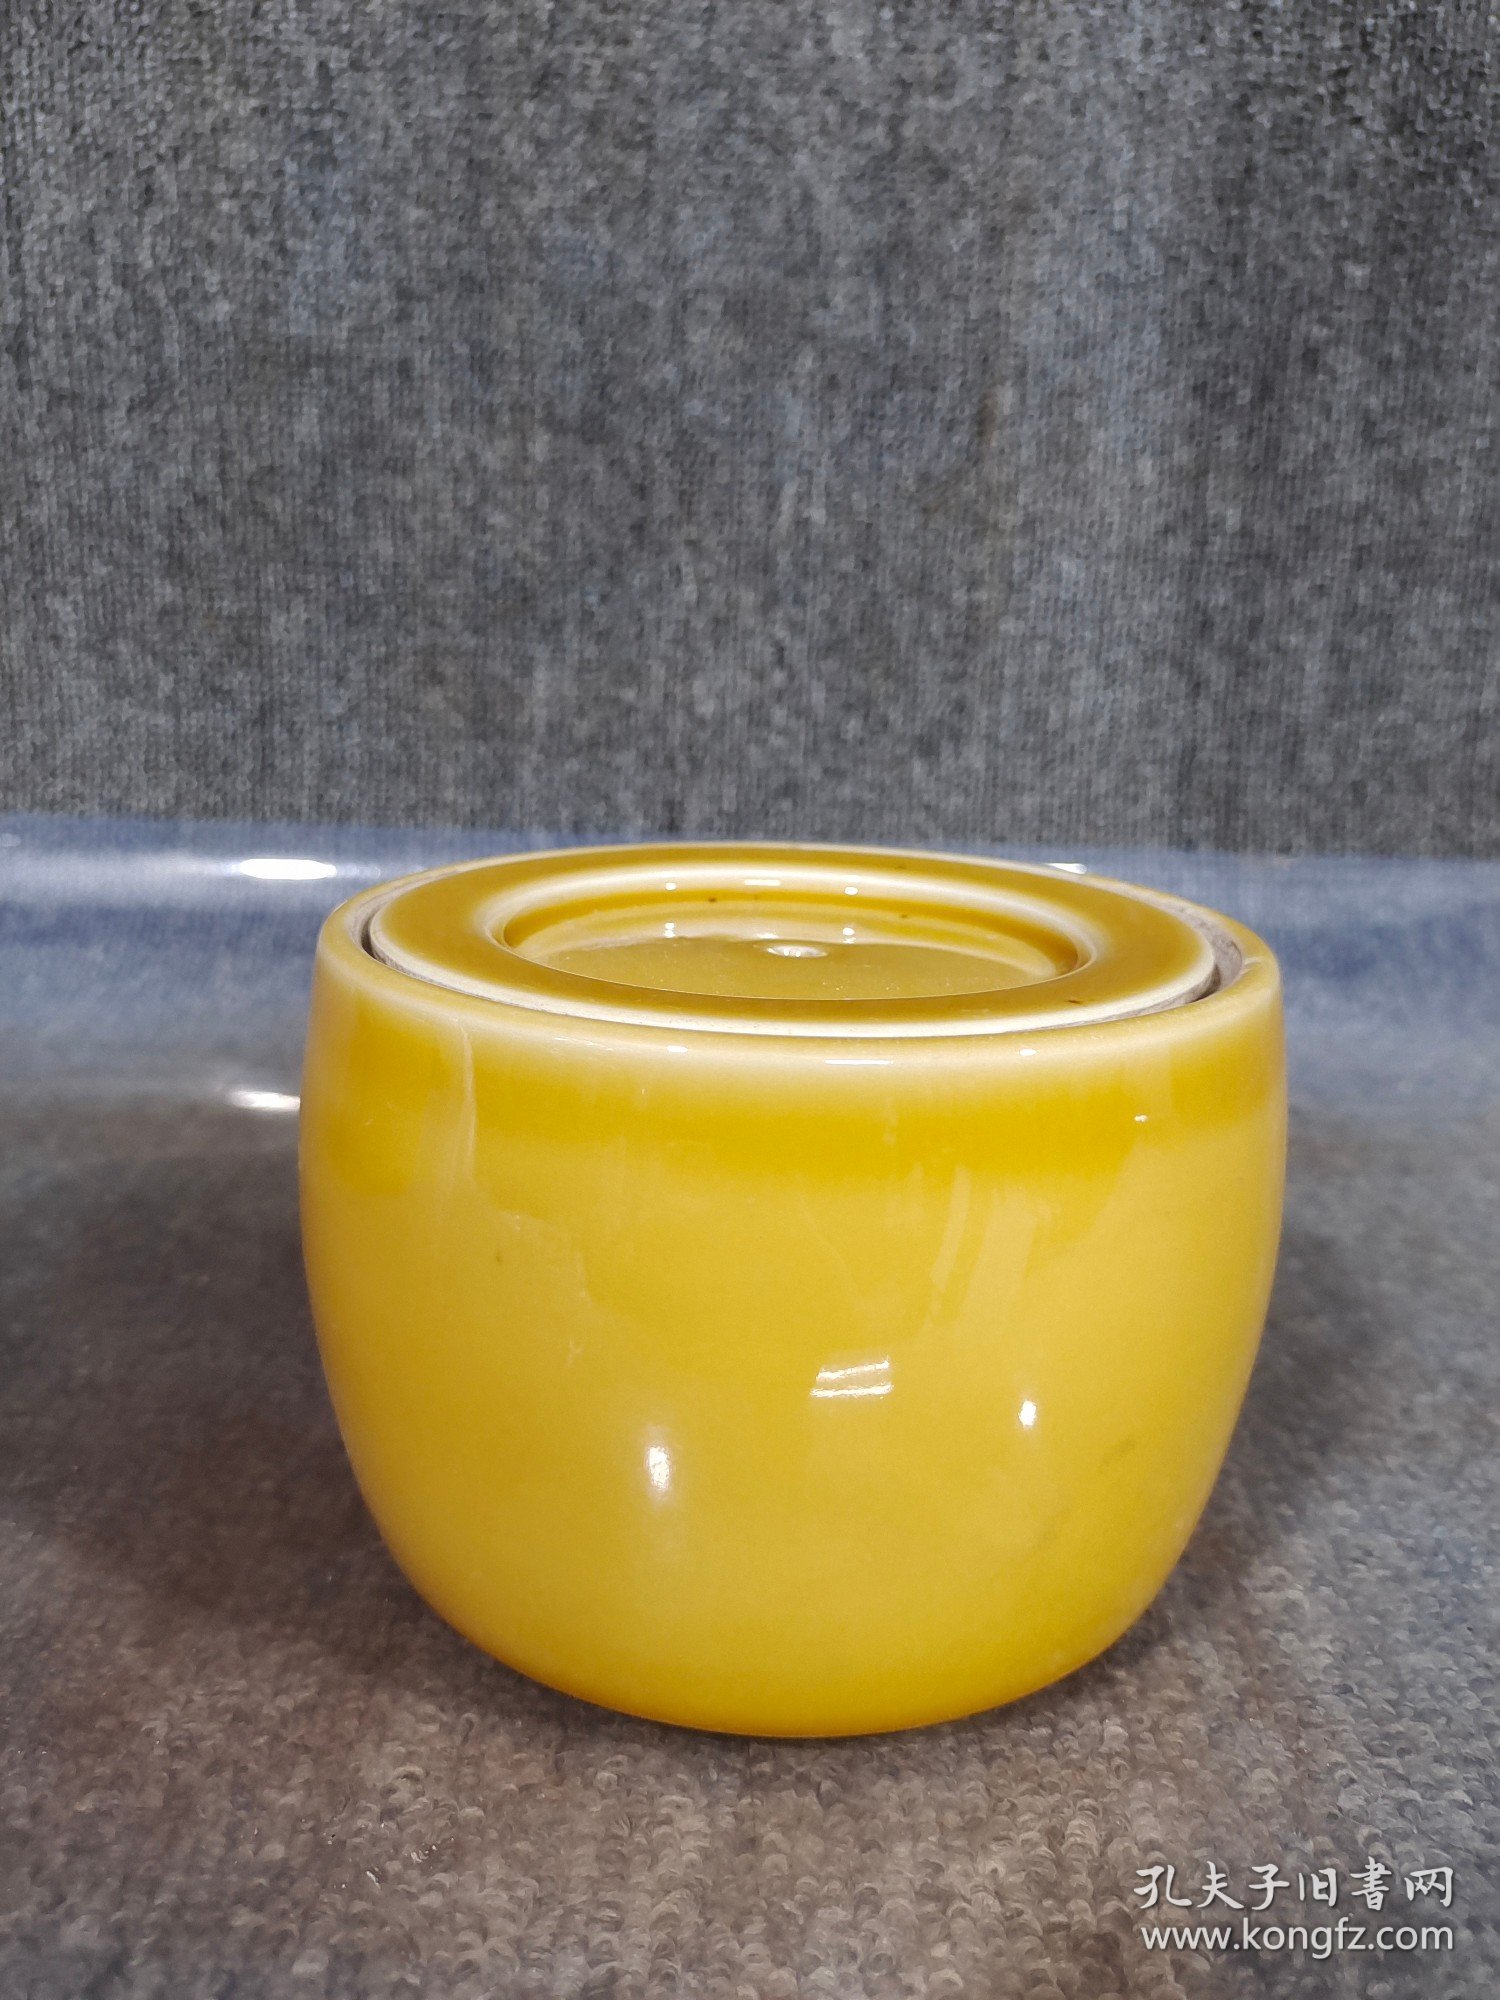 黄釉盖罐一对
口径13cm
高度9.5cm